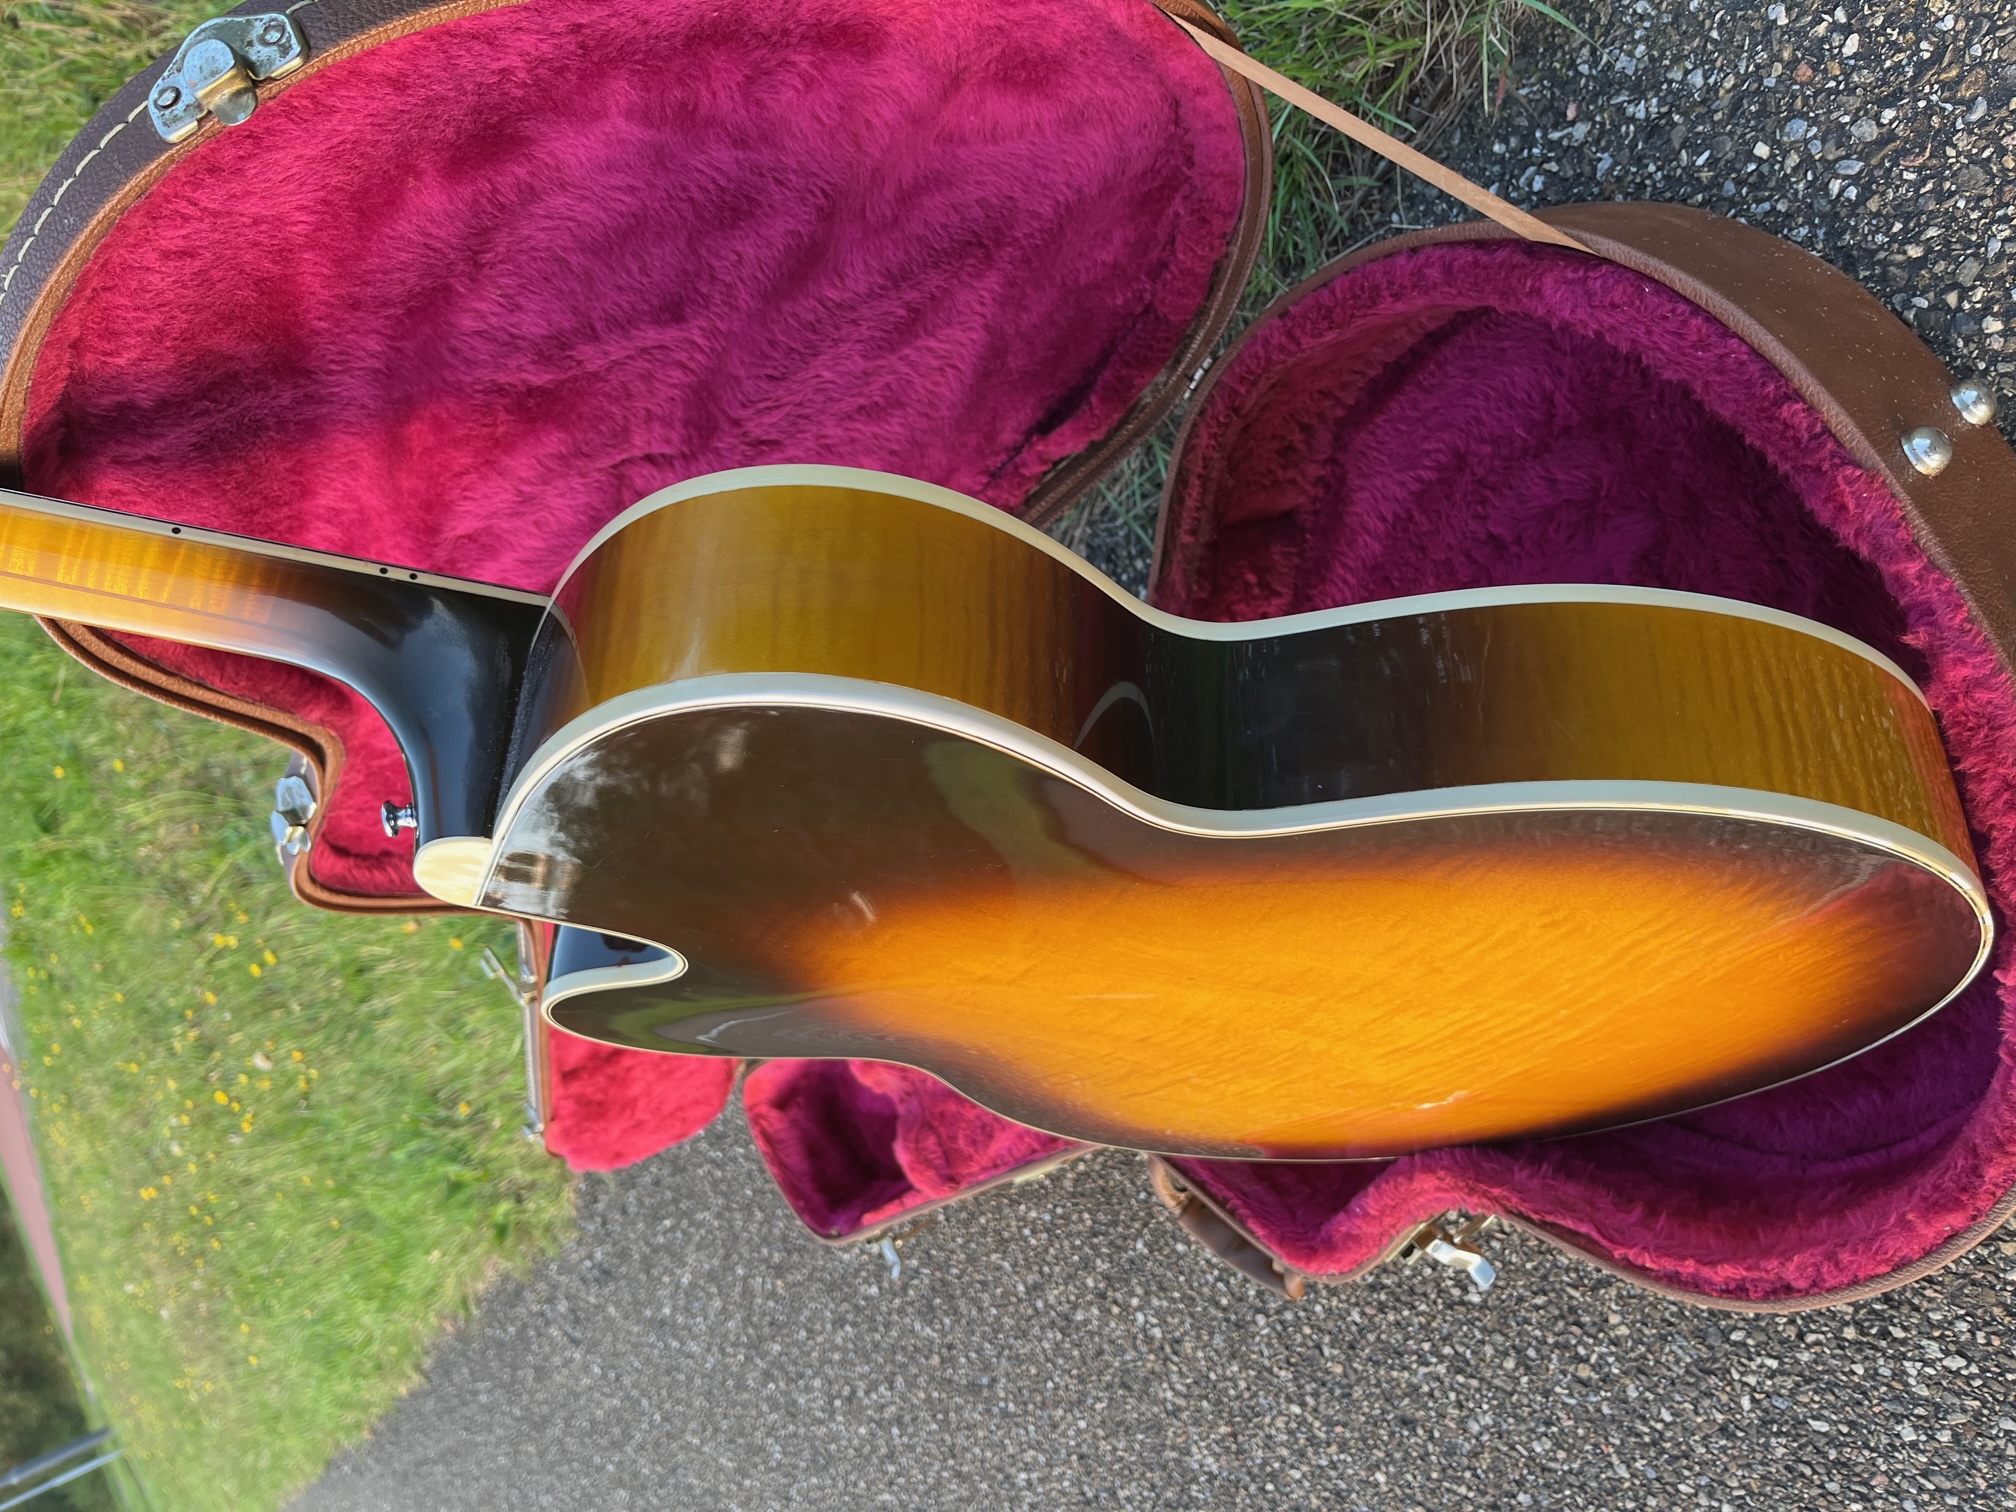 Price Drop 1999 Gibson Tal Farlow-image1-jpeg